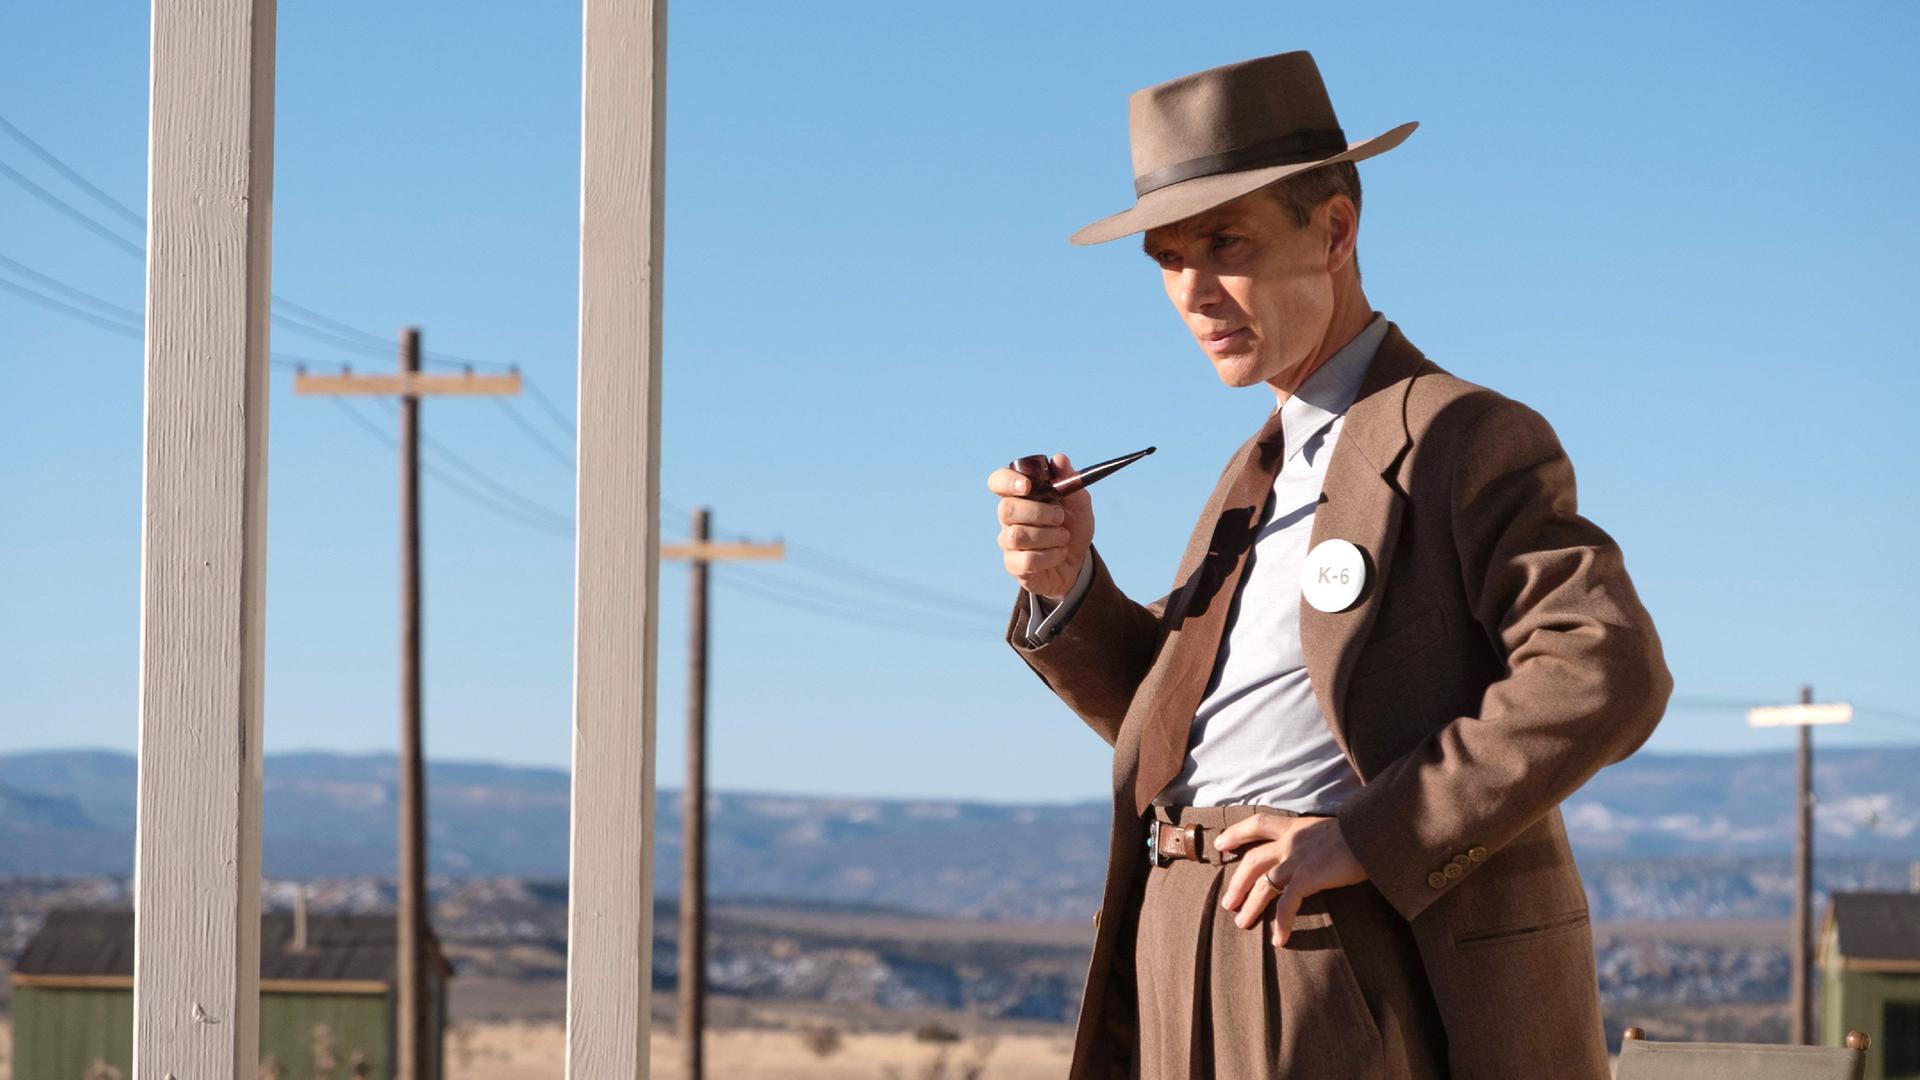 Cillian Murphy als J. Robert Oppenheimer im Film "Oppenheimer". Er trägt einen Anzug, einen Hut und hält eine Pfeife in der Hand.